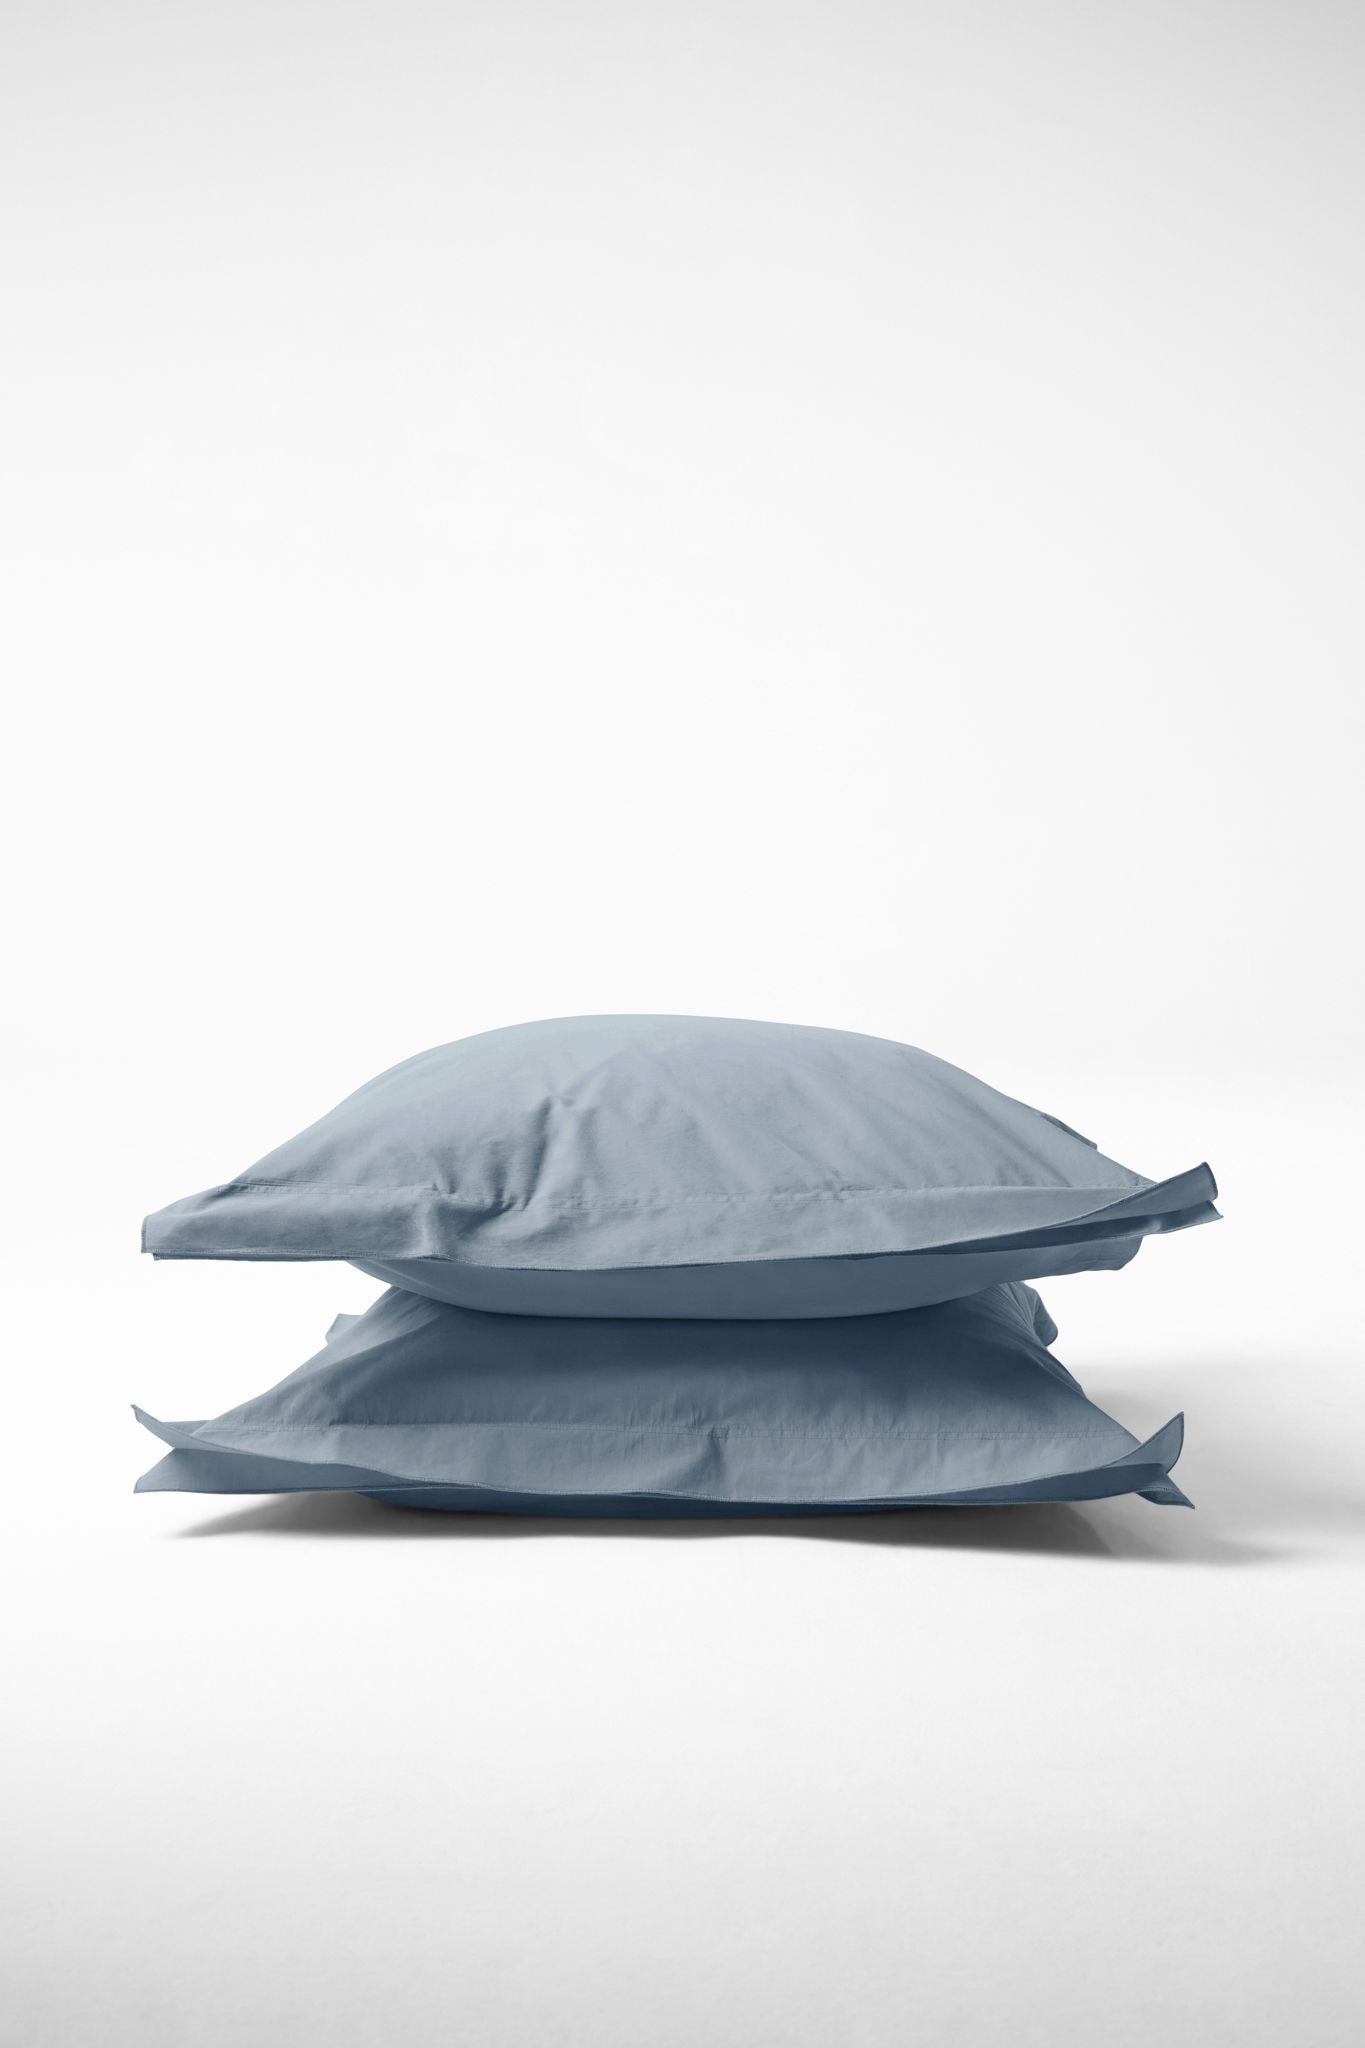 Mono Organic Cotton Percale Pillow Pair - Half Blue Pillows in Euro Pillow